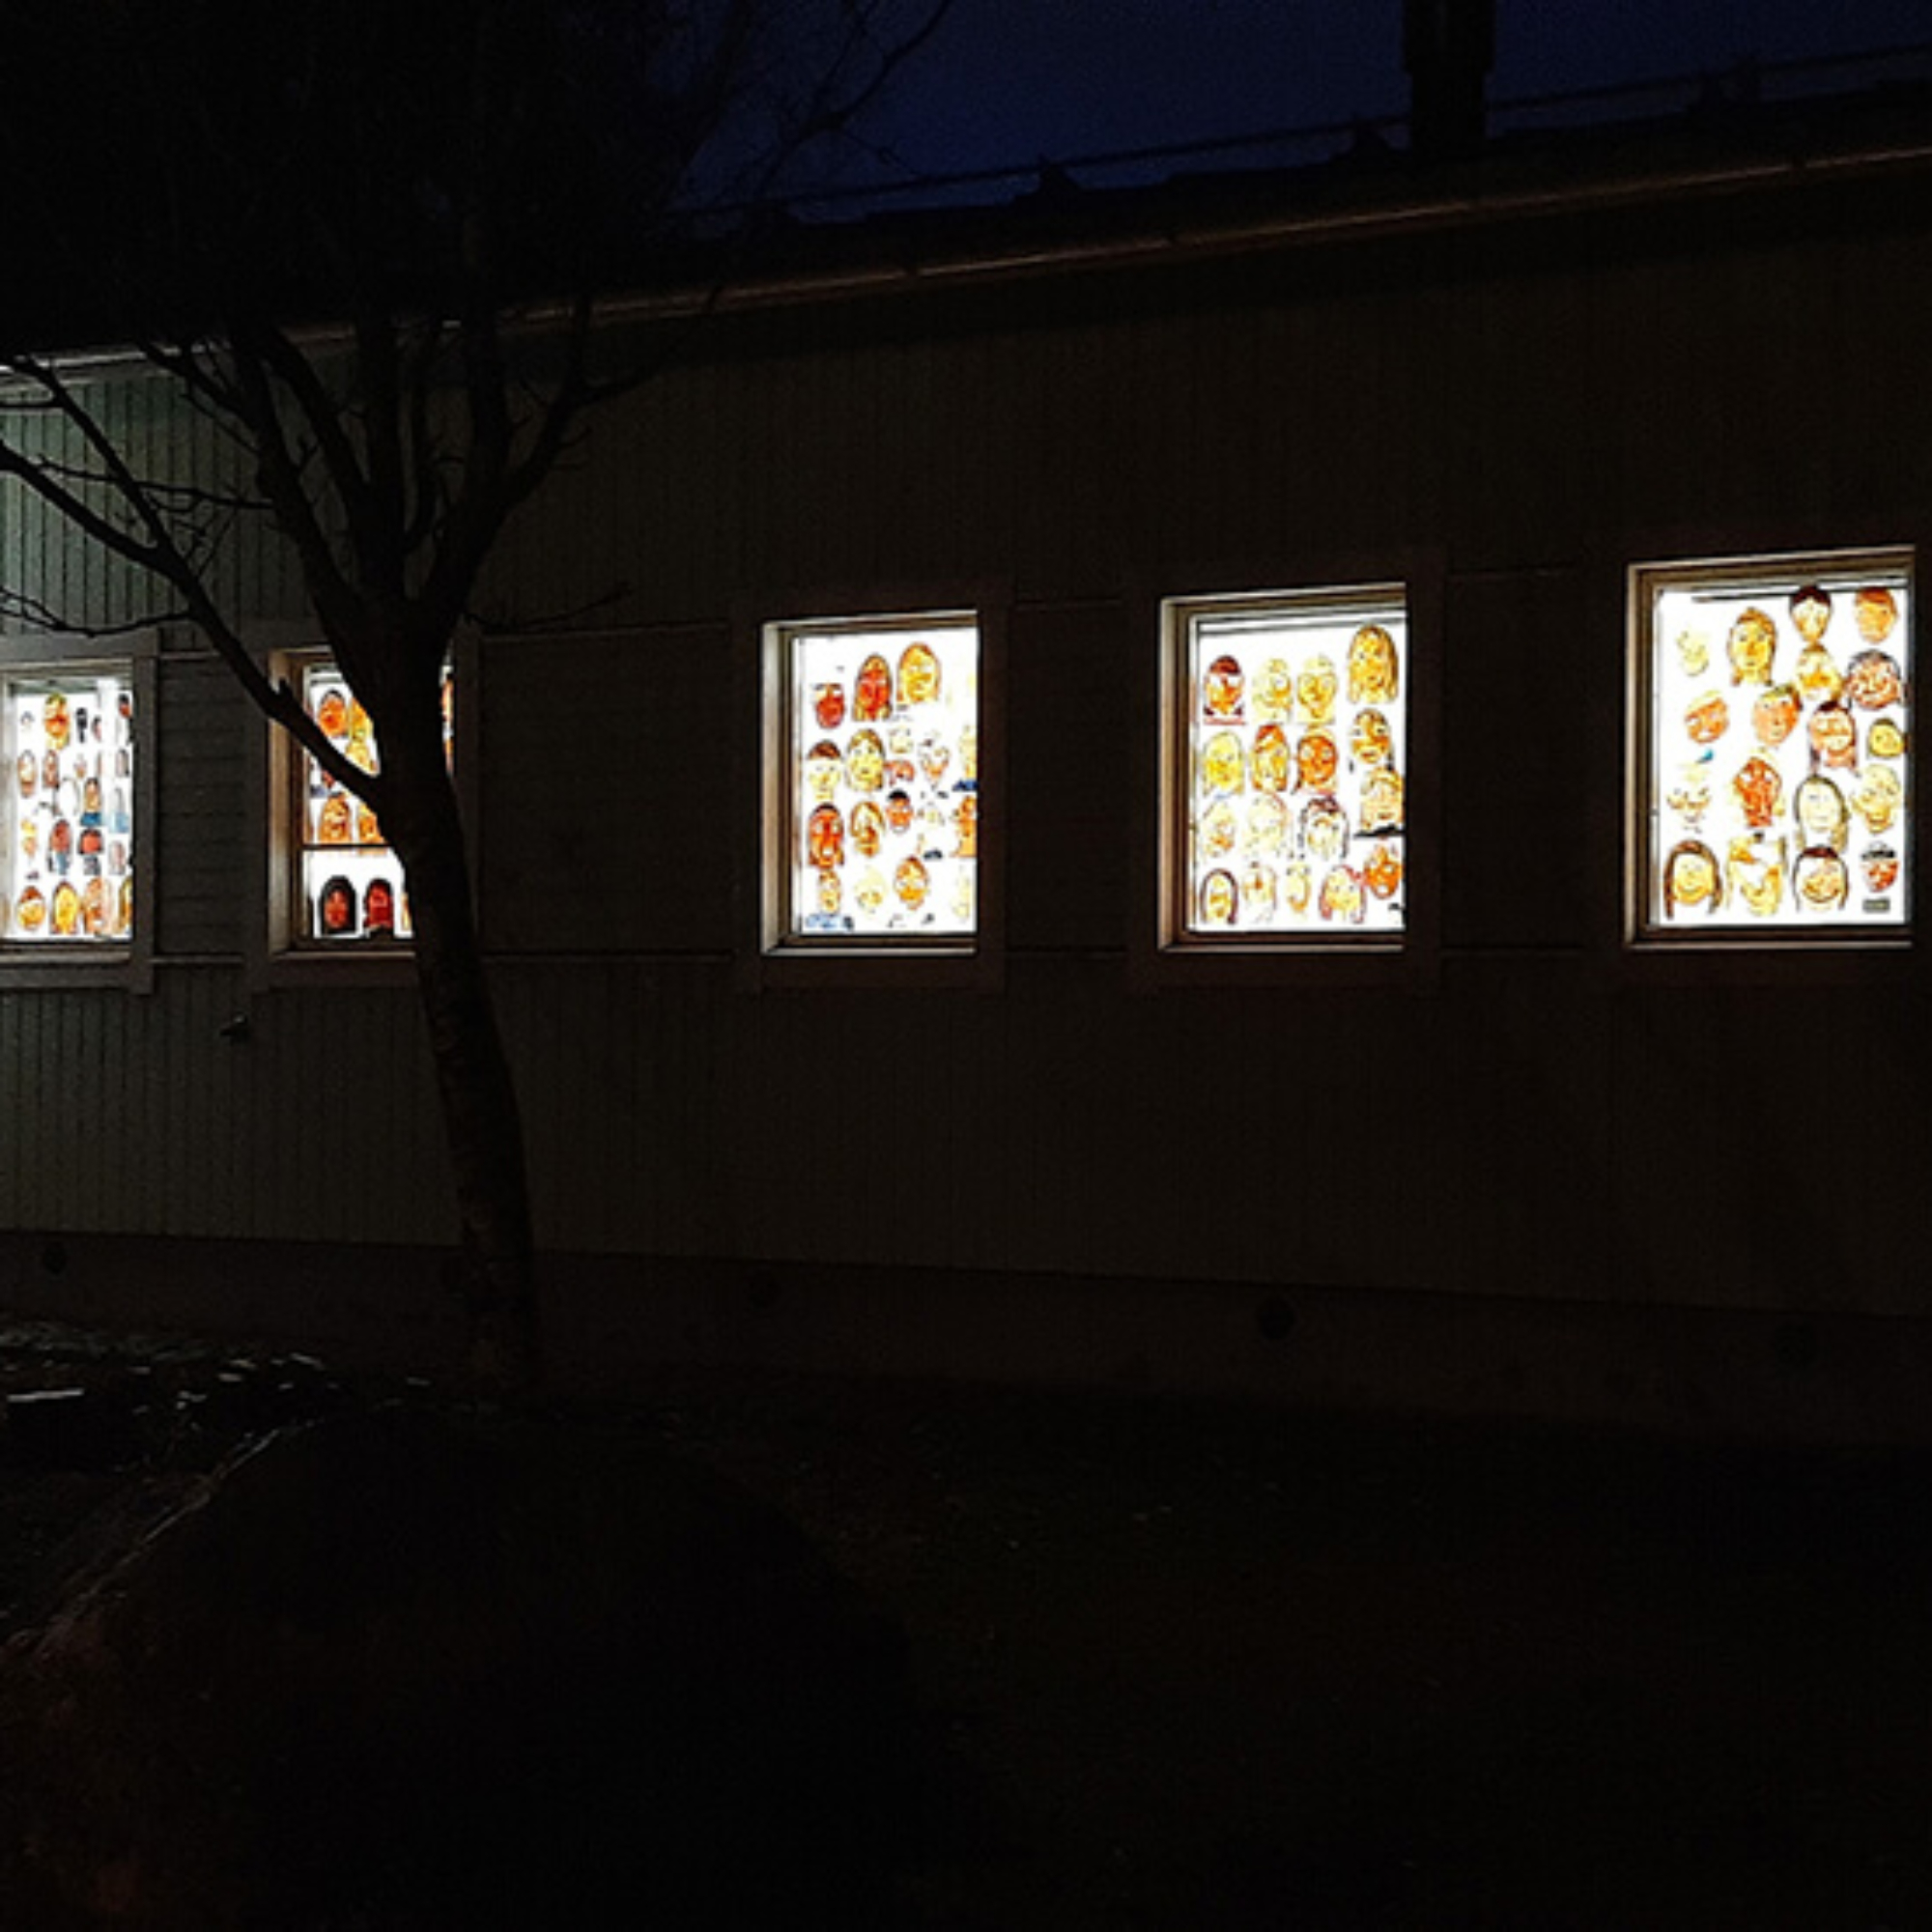 Lasten maalaamia omakuvia puutalon ikkunoissa pimeässä illassa.